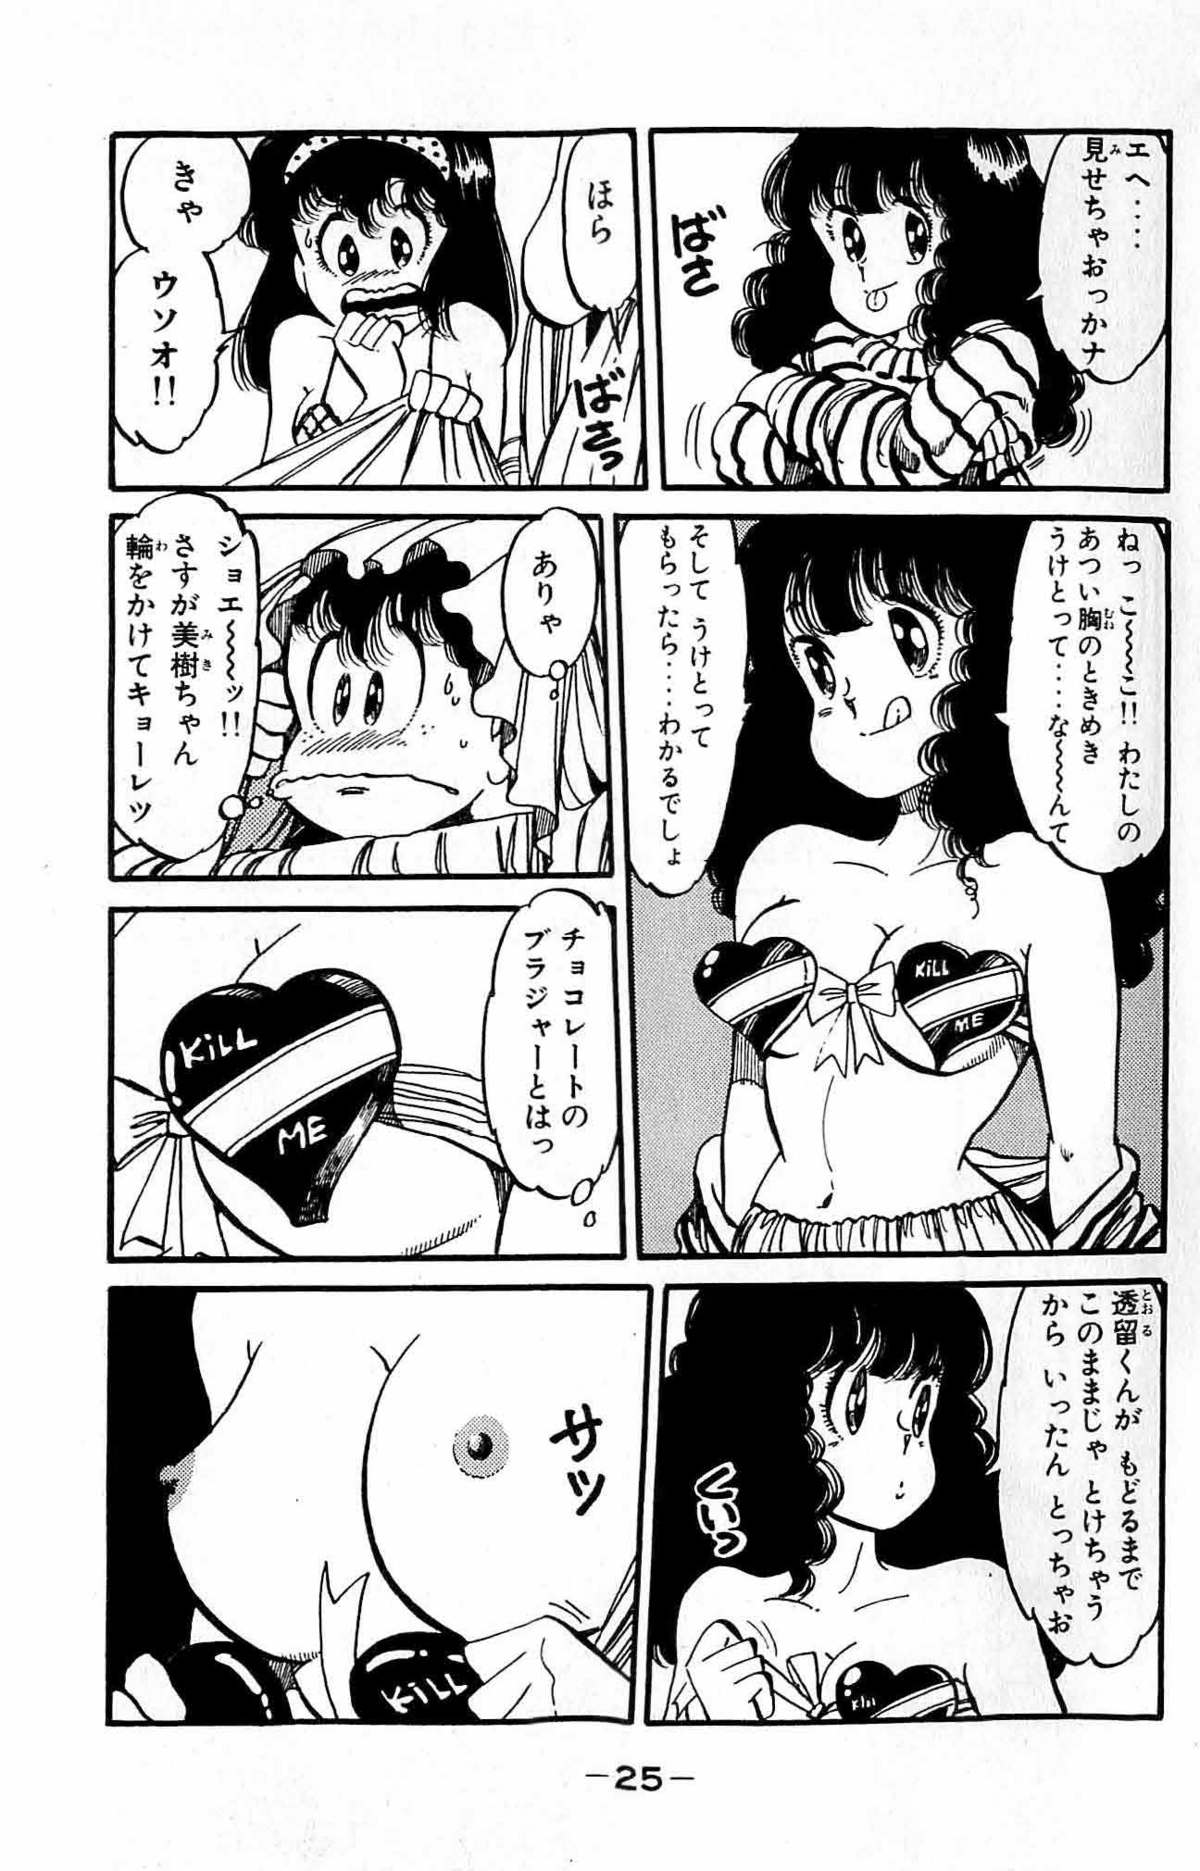 [Nakanishi Yasuhiro] Oh! Toumei Ningen Vol.9 [中西やすひろ] Oh!透明人間 第9巻